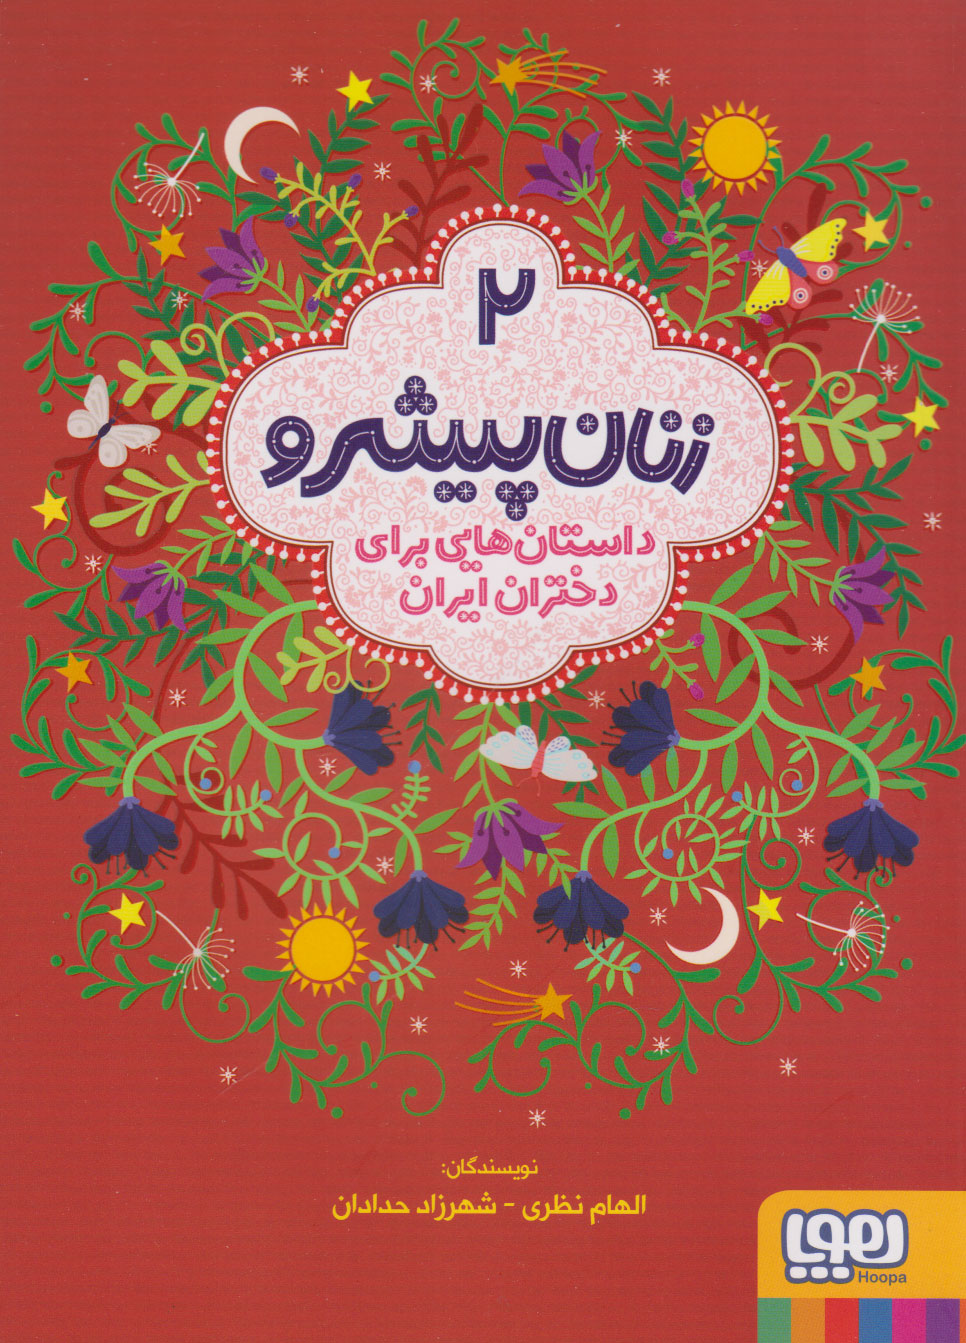  خريد کتاب  زنان پیشرو 2 (داستان هایی برای دختران ایران)